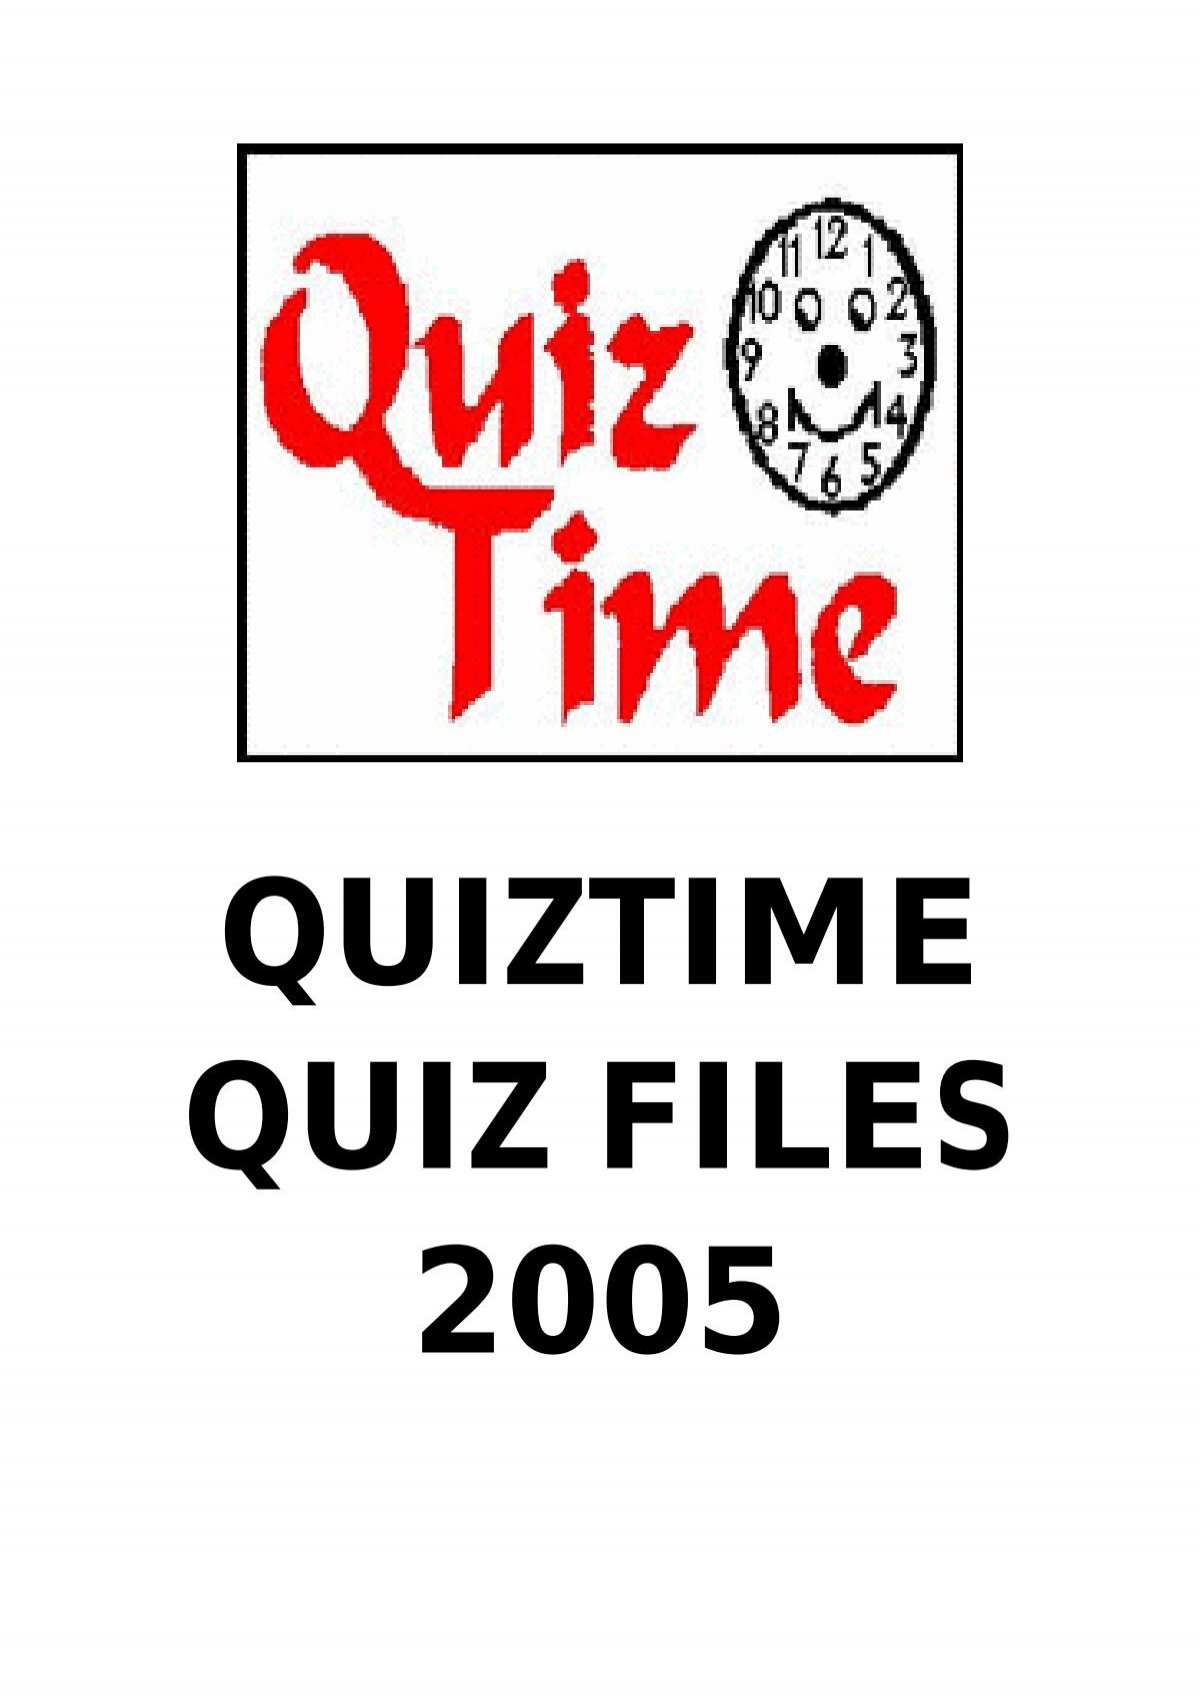 Quiztime UK - Chris's Quiztime & Quizerama